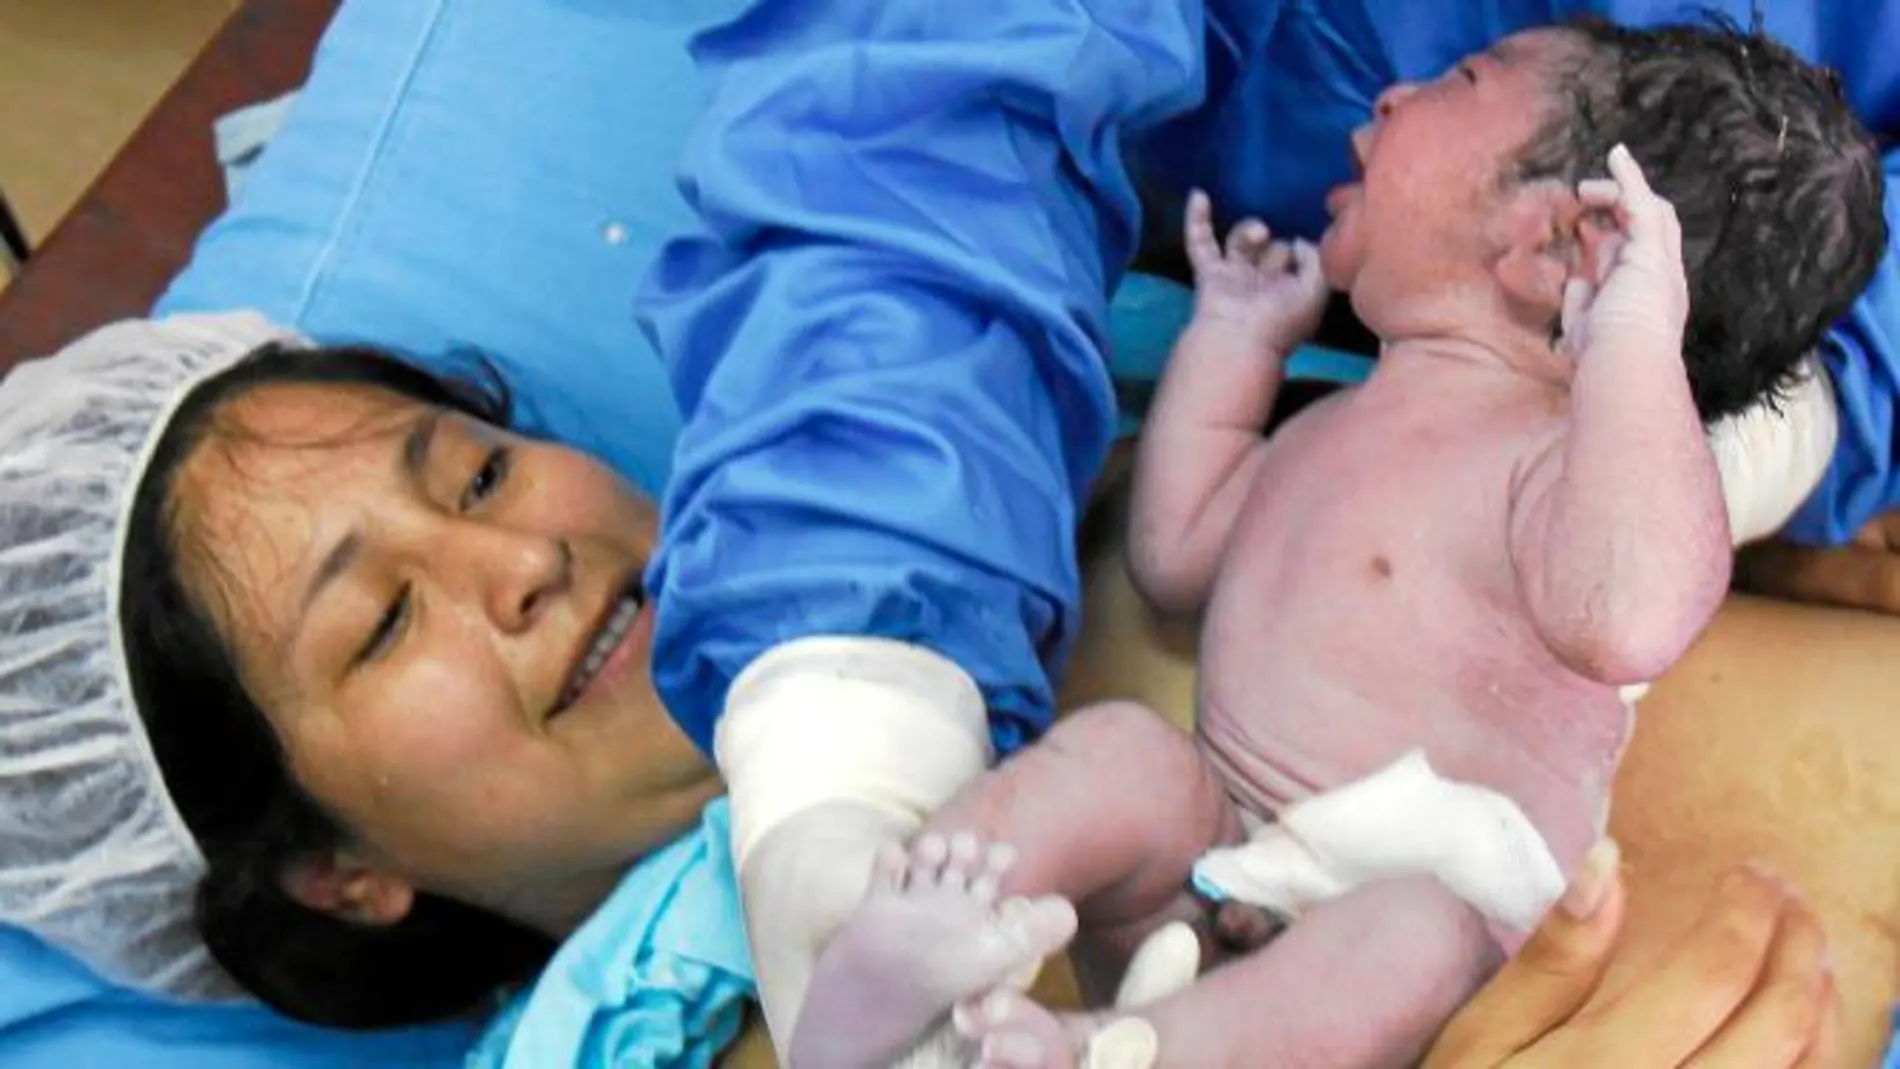 En la imagen, una mujer da a luz a su bebé